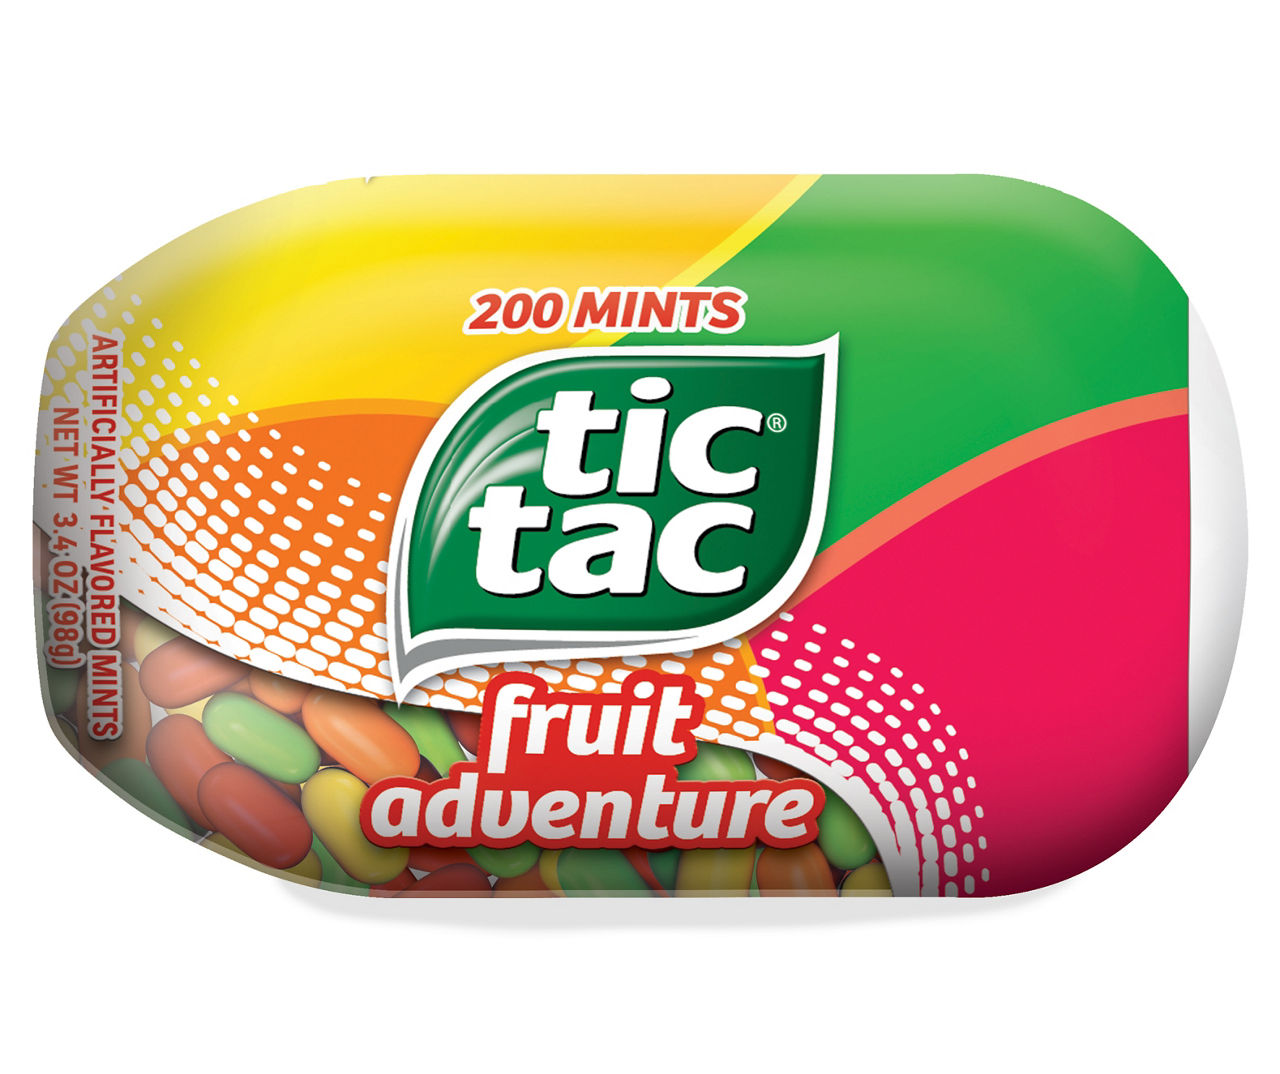 Tic Tac Fruit Adventure - 4oz/4pk : Target